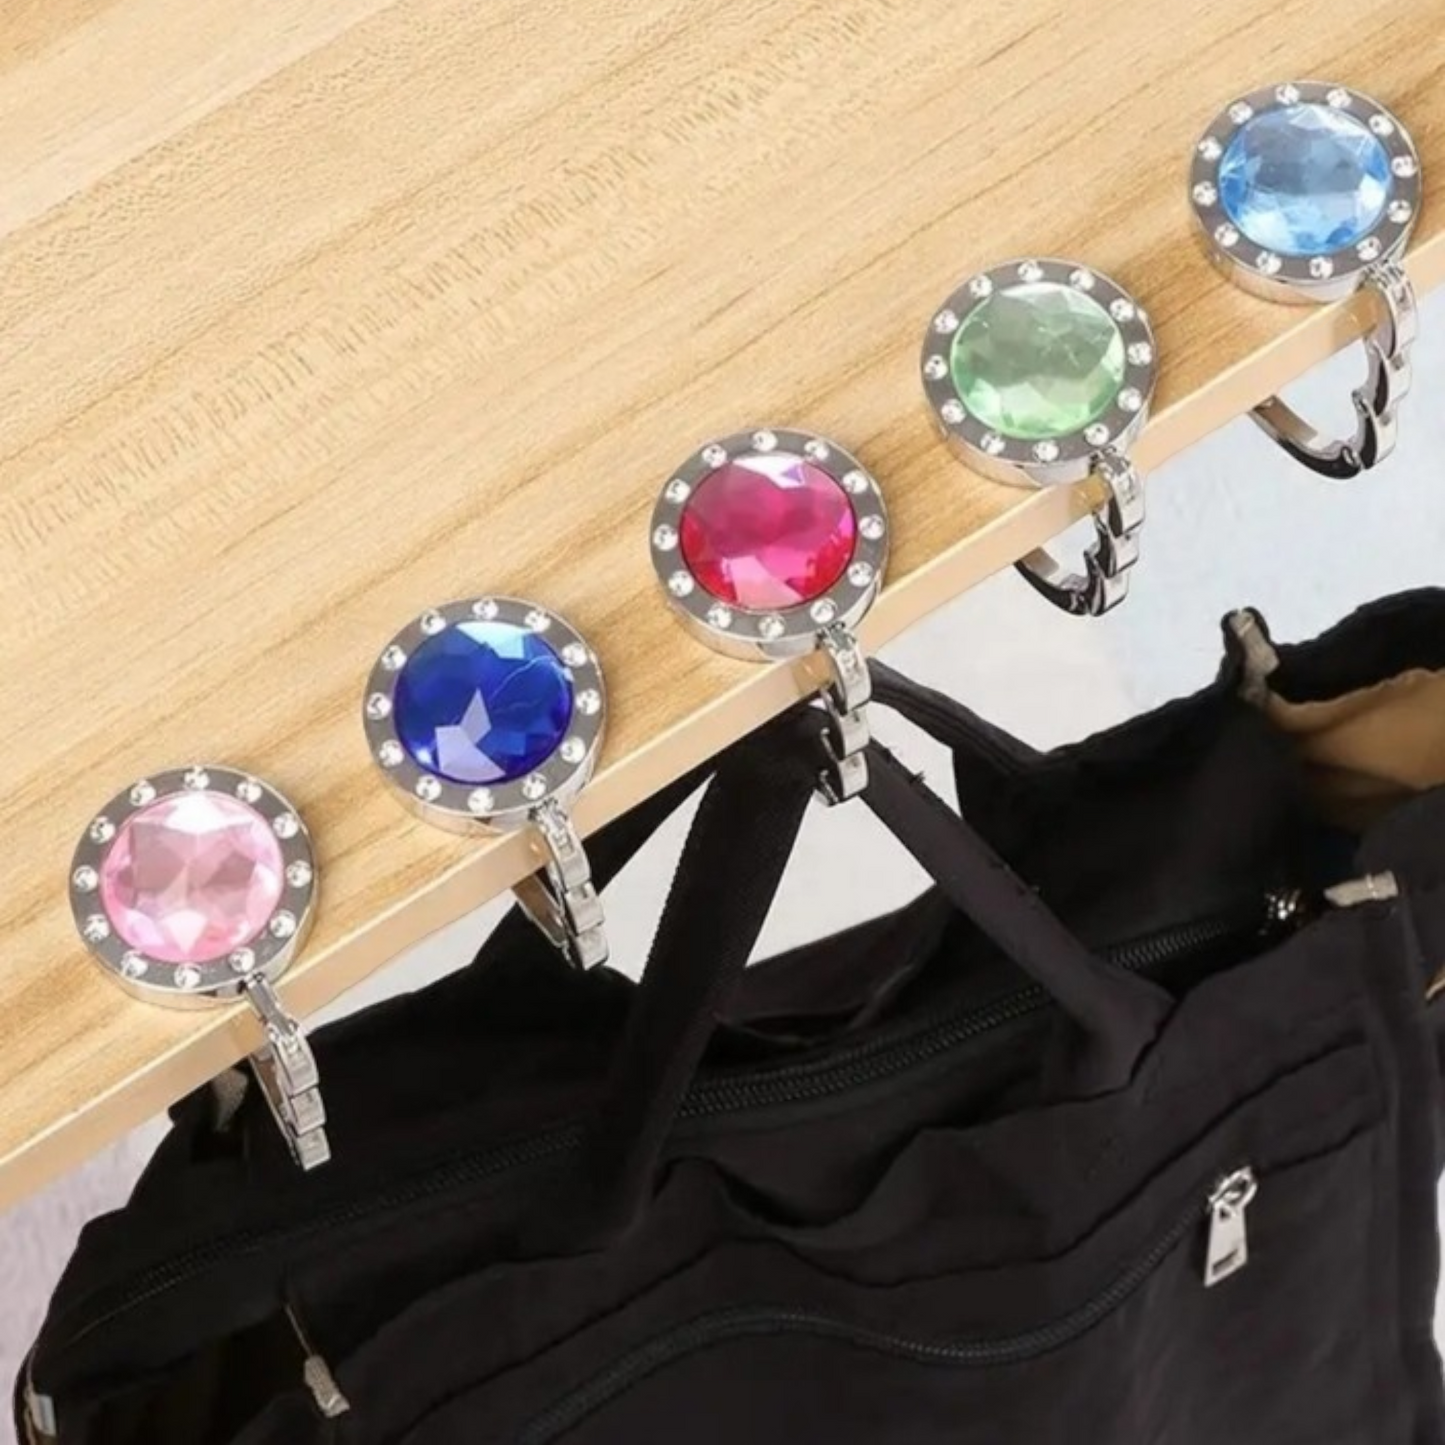 Handbag Table Hook - Diamond Style